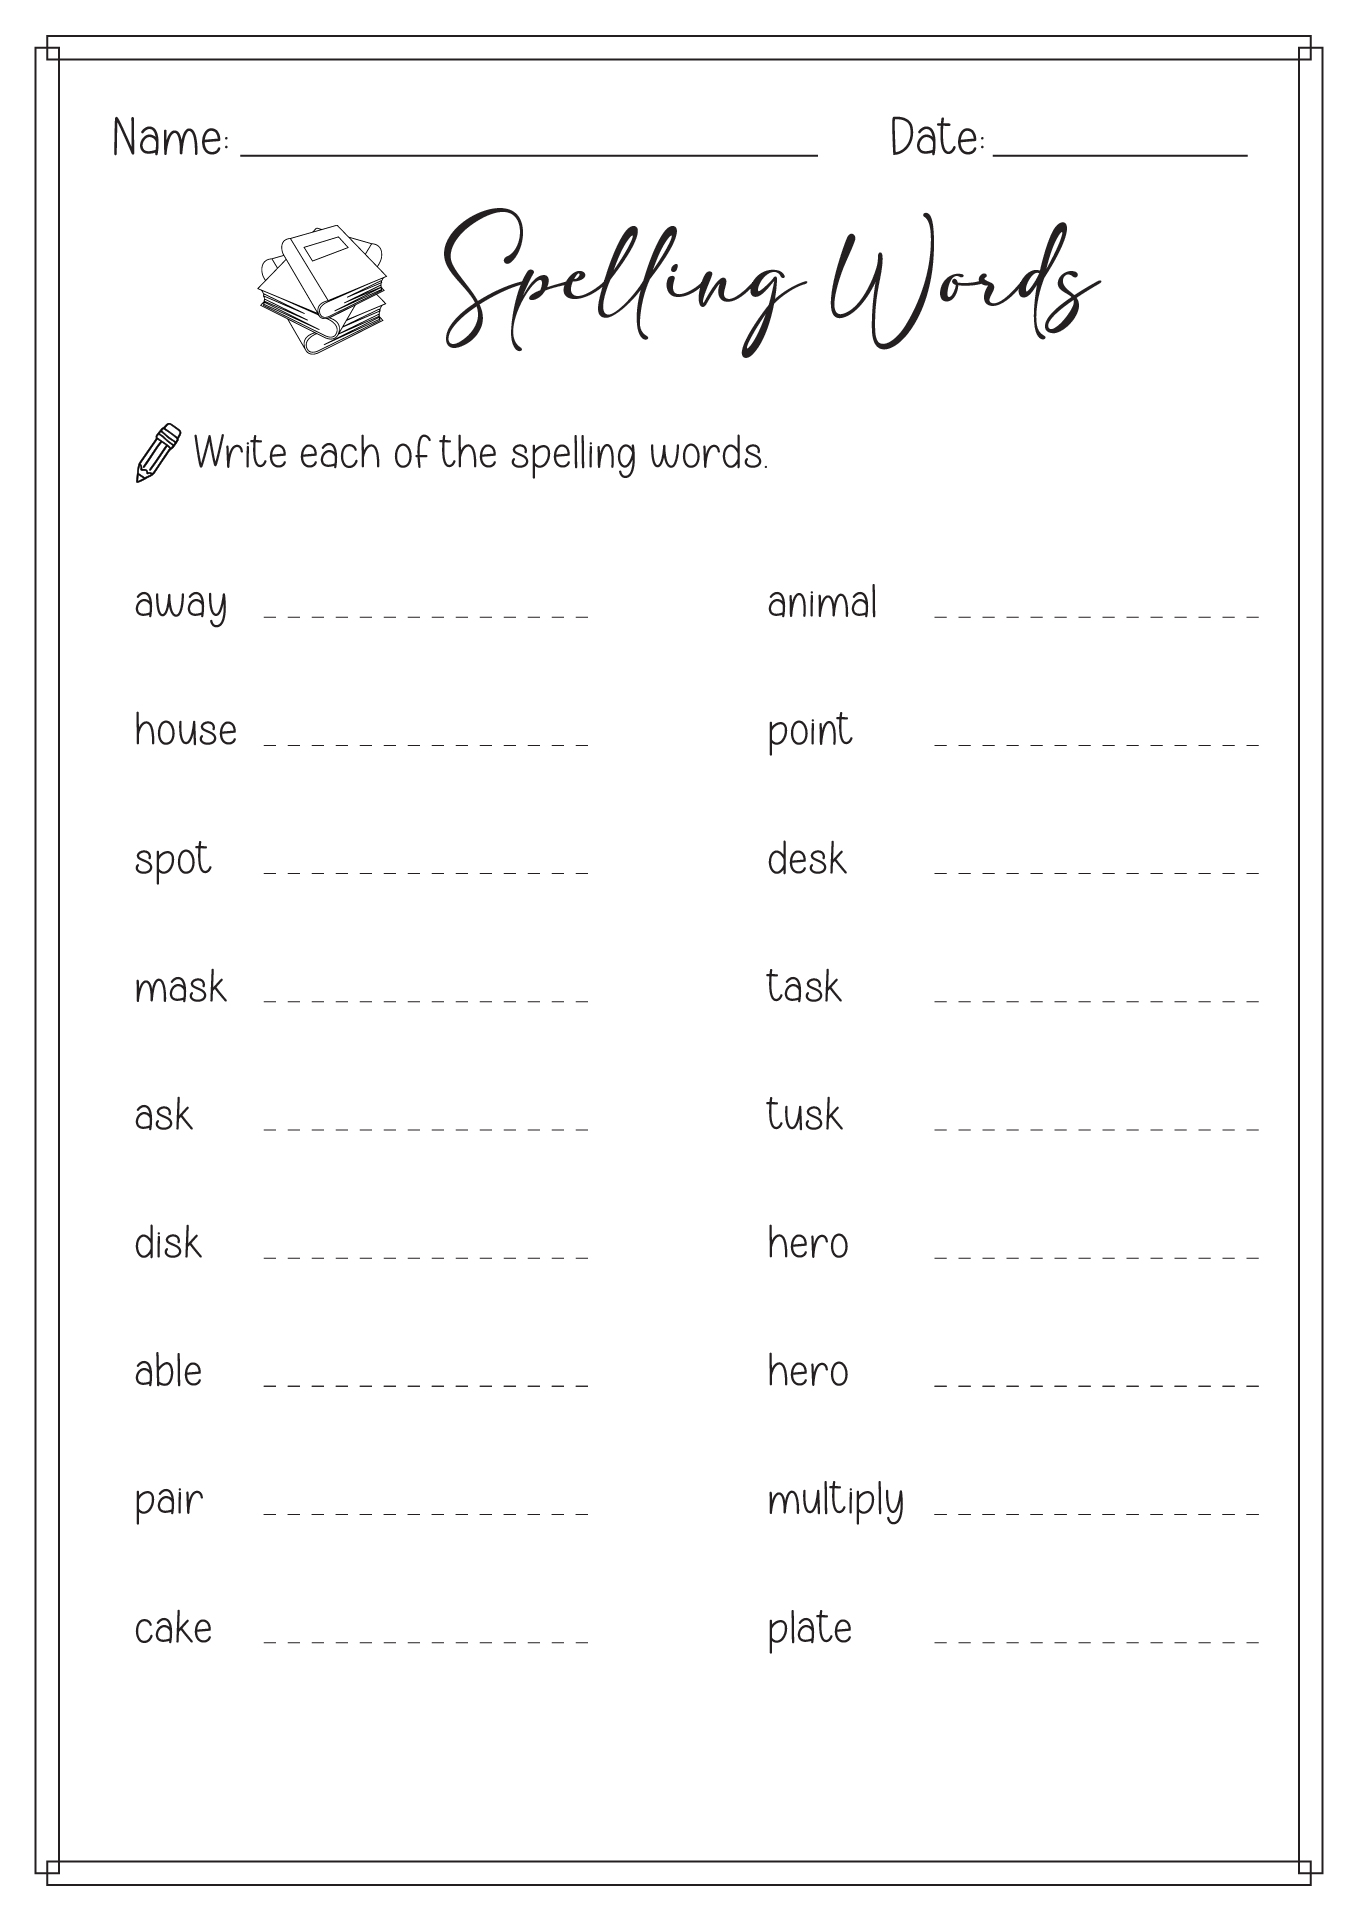 2nd Grade Spelling Worksheets Printable